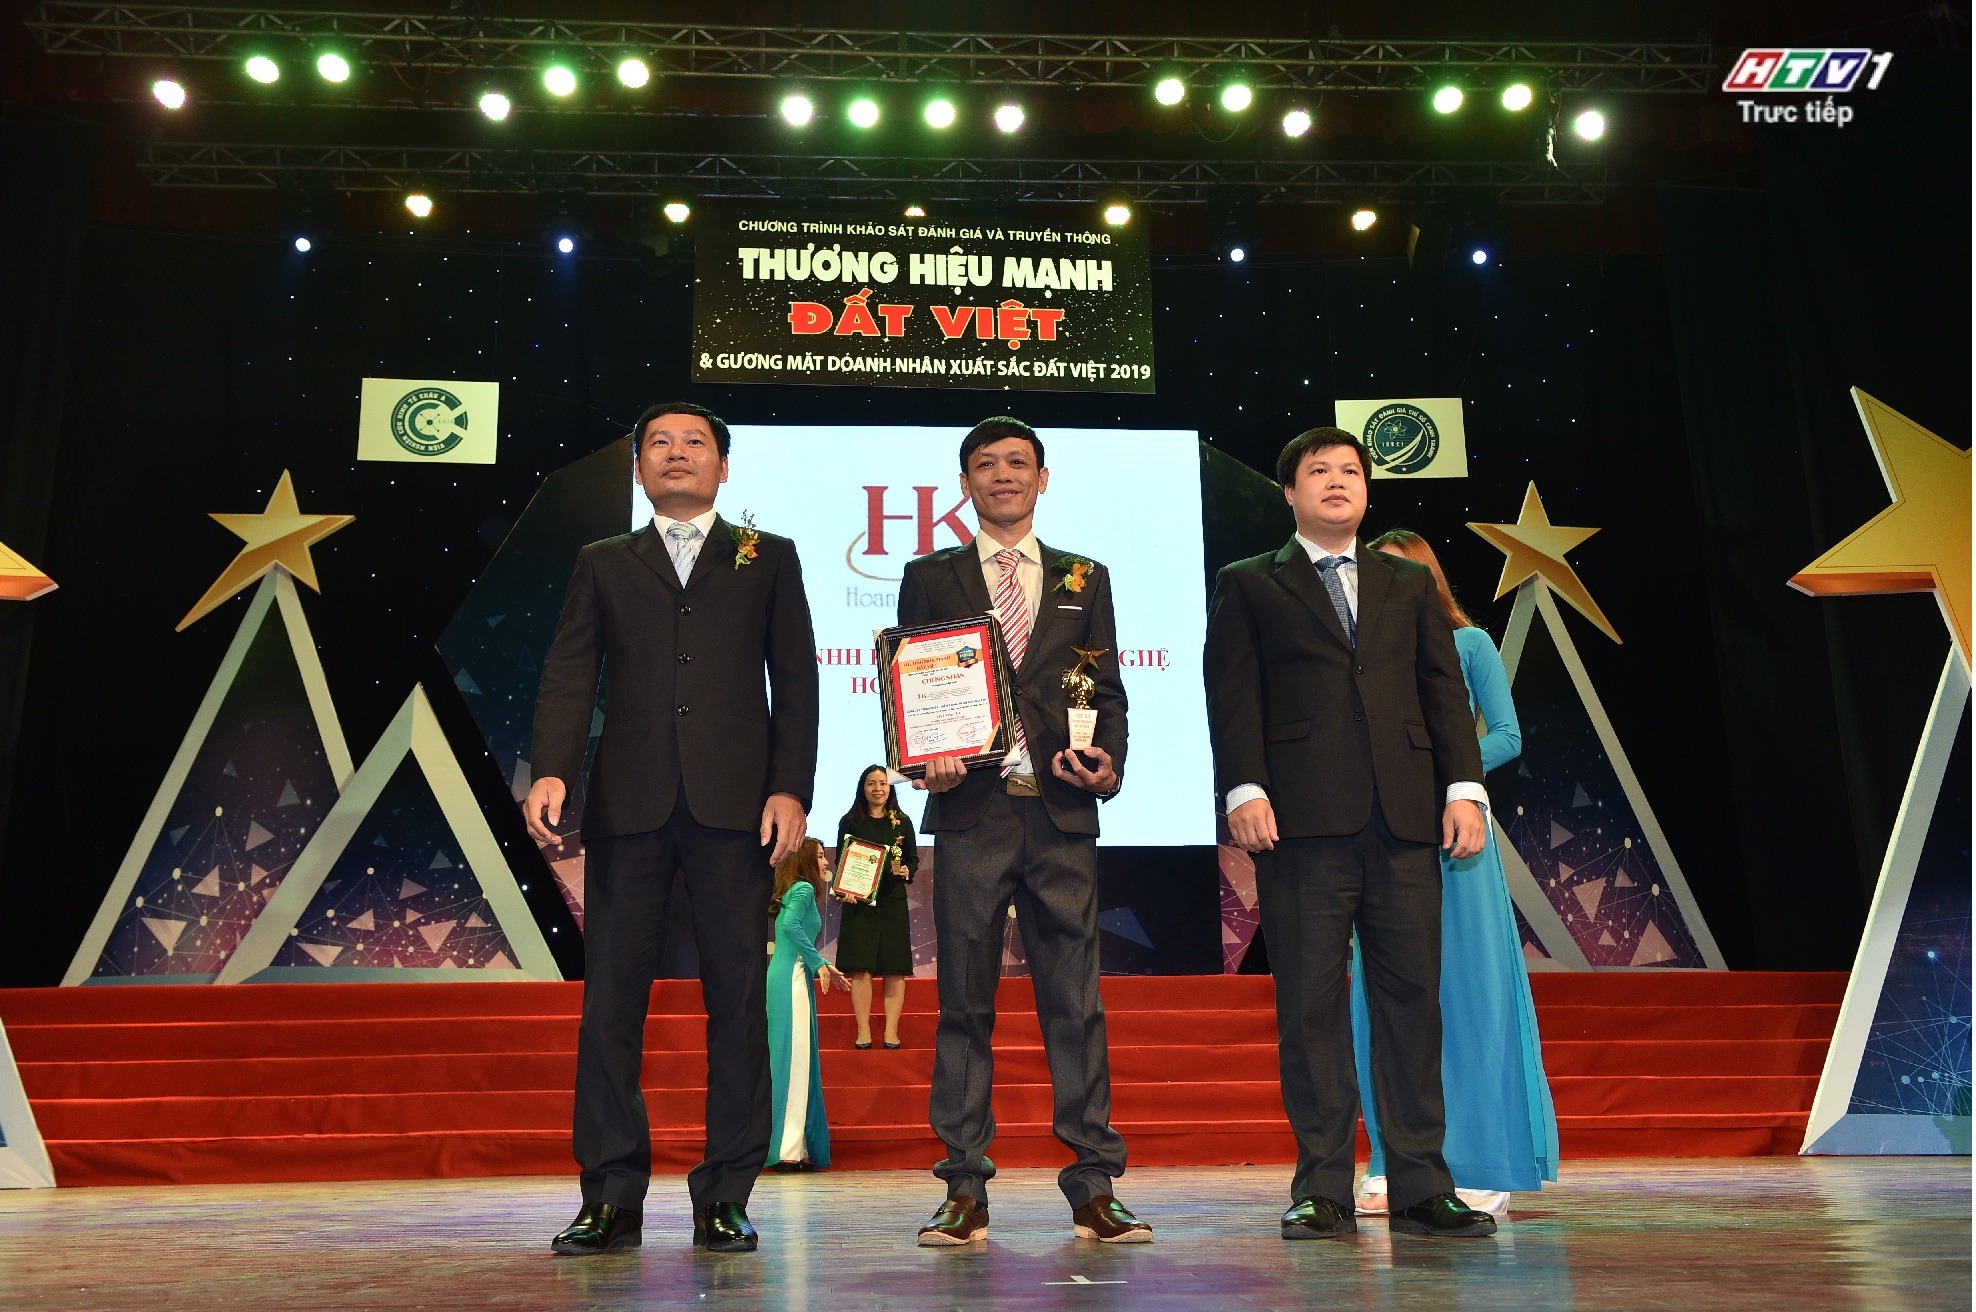 Công ty TNHH Phát Triển Công Nghệ Hoàng Kim nhận giải thưởng thương hiệu mạnh Đất Việt 2019